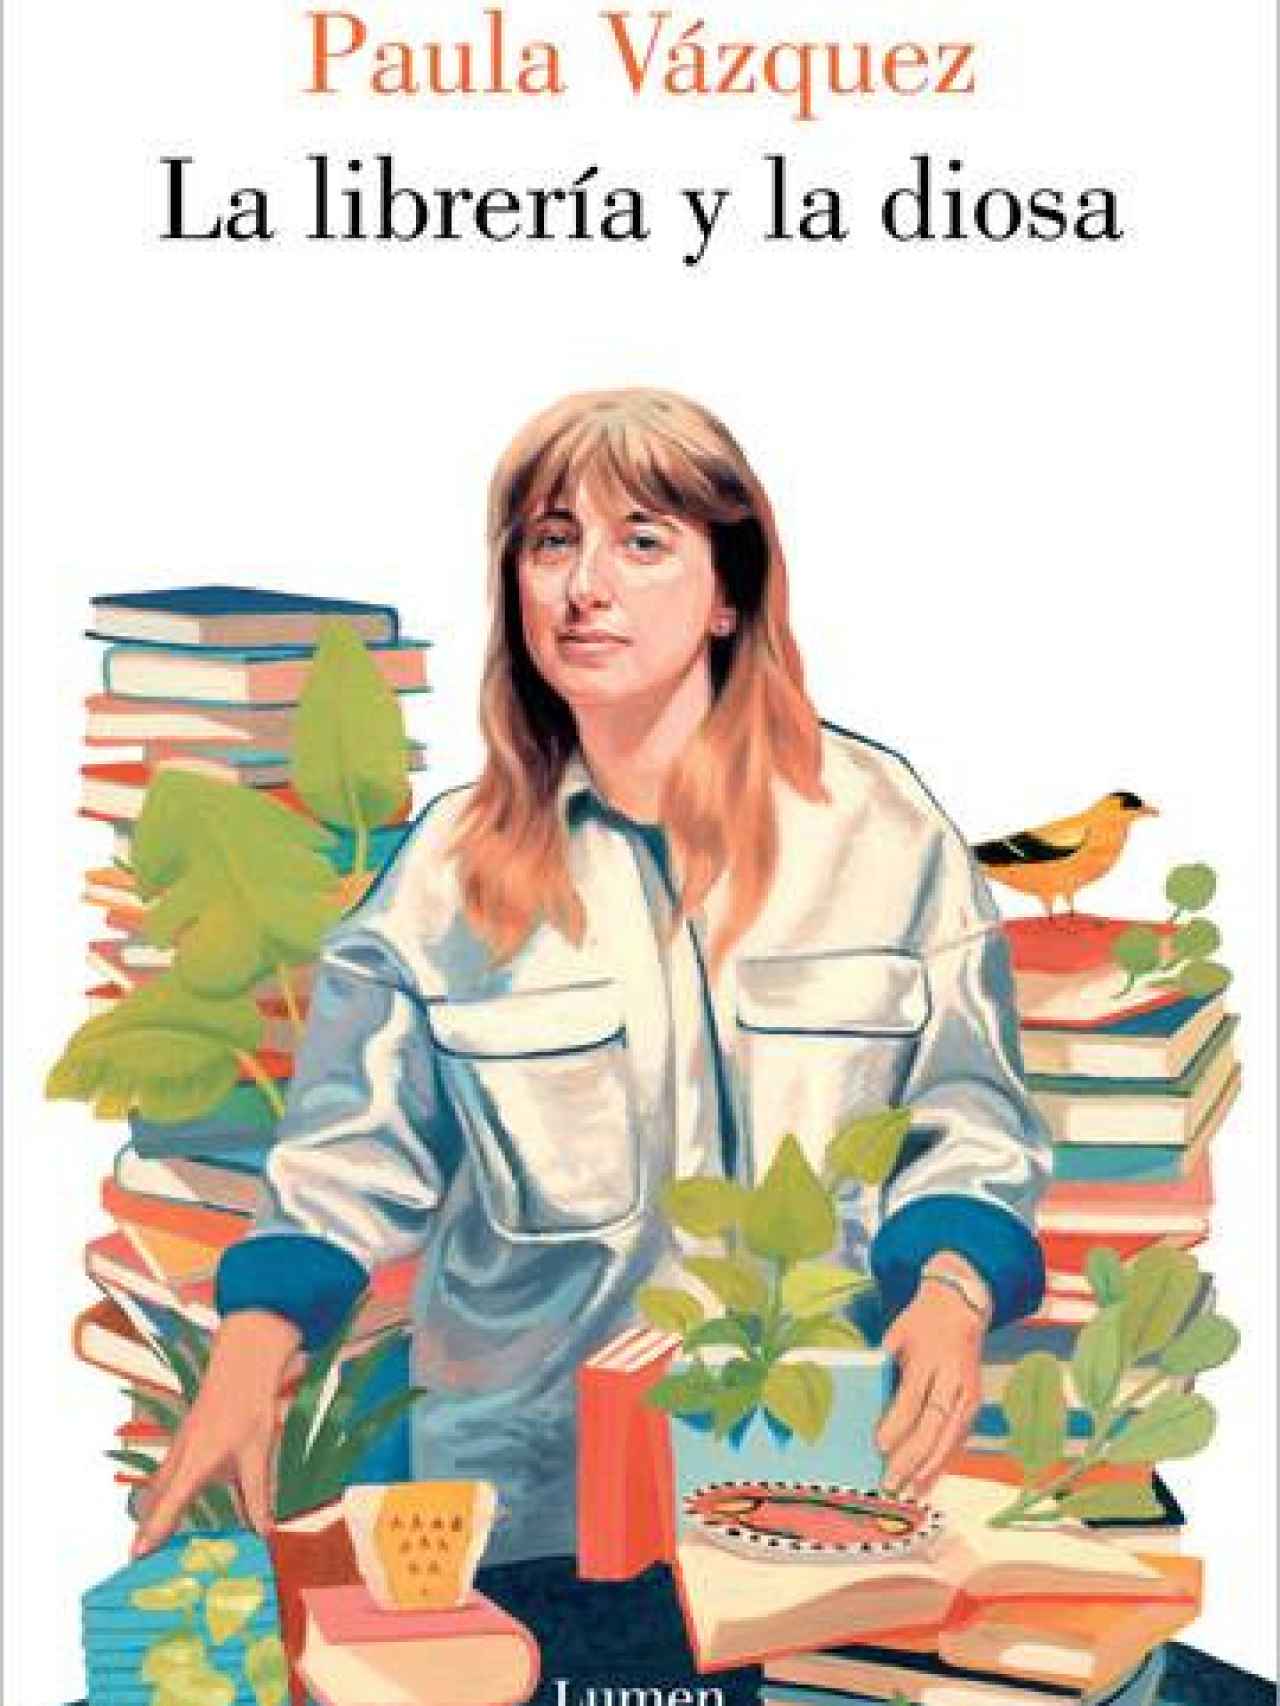 Portada del libro 'La librería y la diosa' (Lumen, 2023).